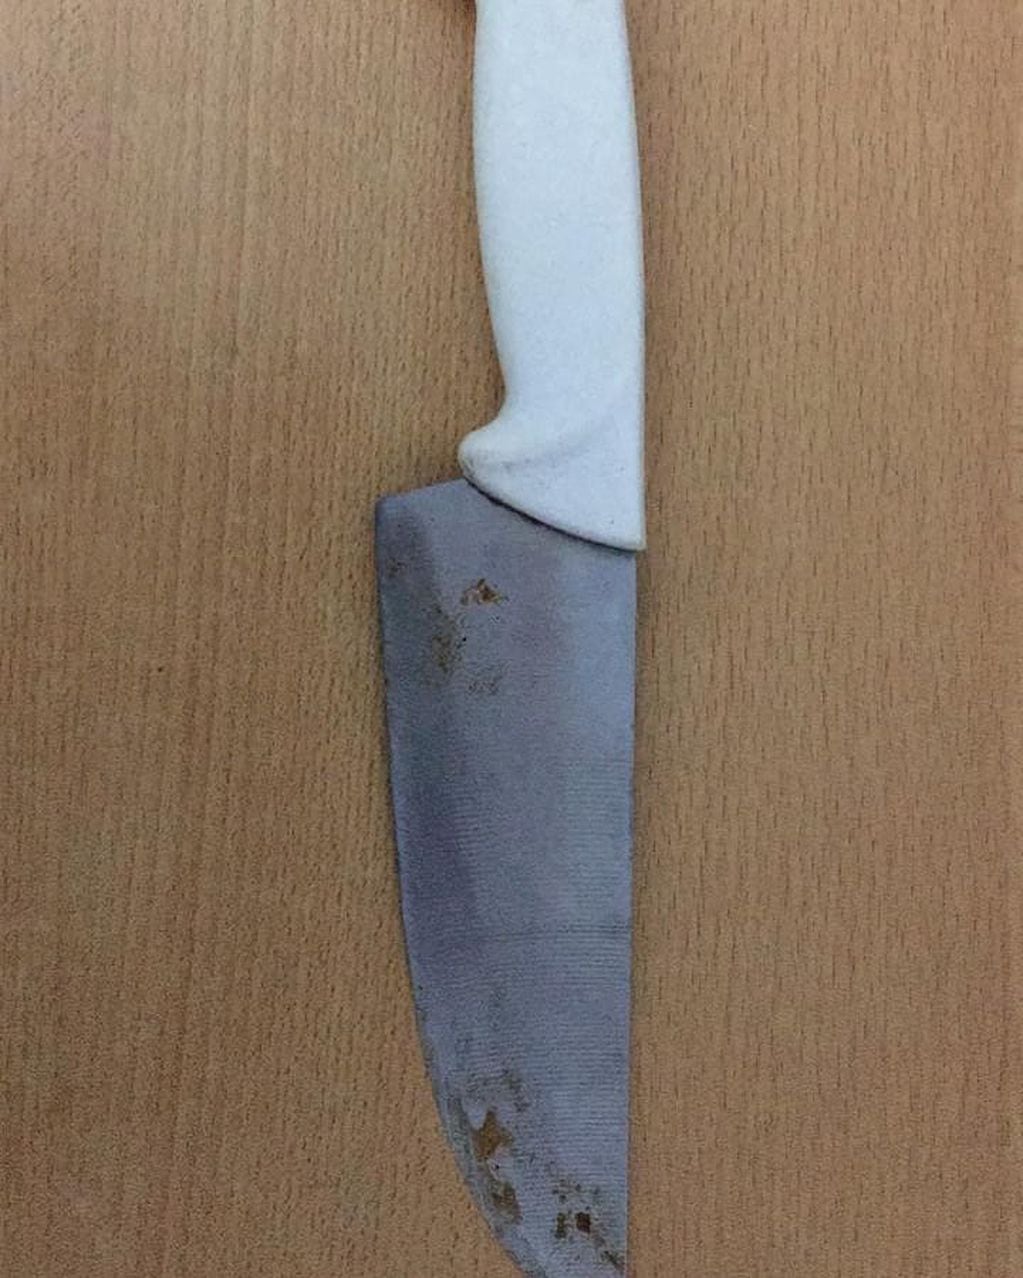 La victima expresó que fue amenazada con un cuchillo tipo carnicero